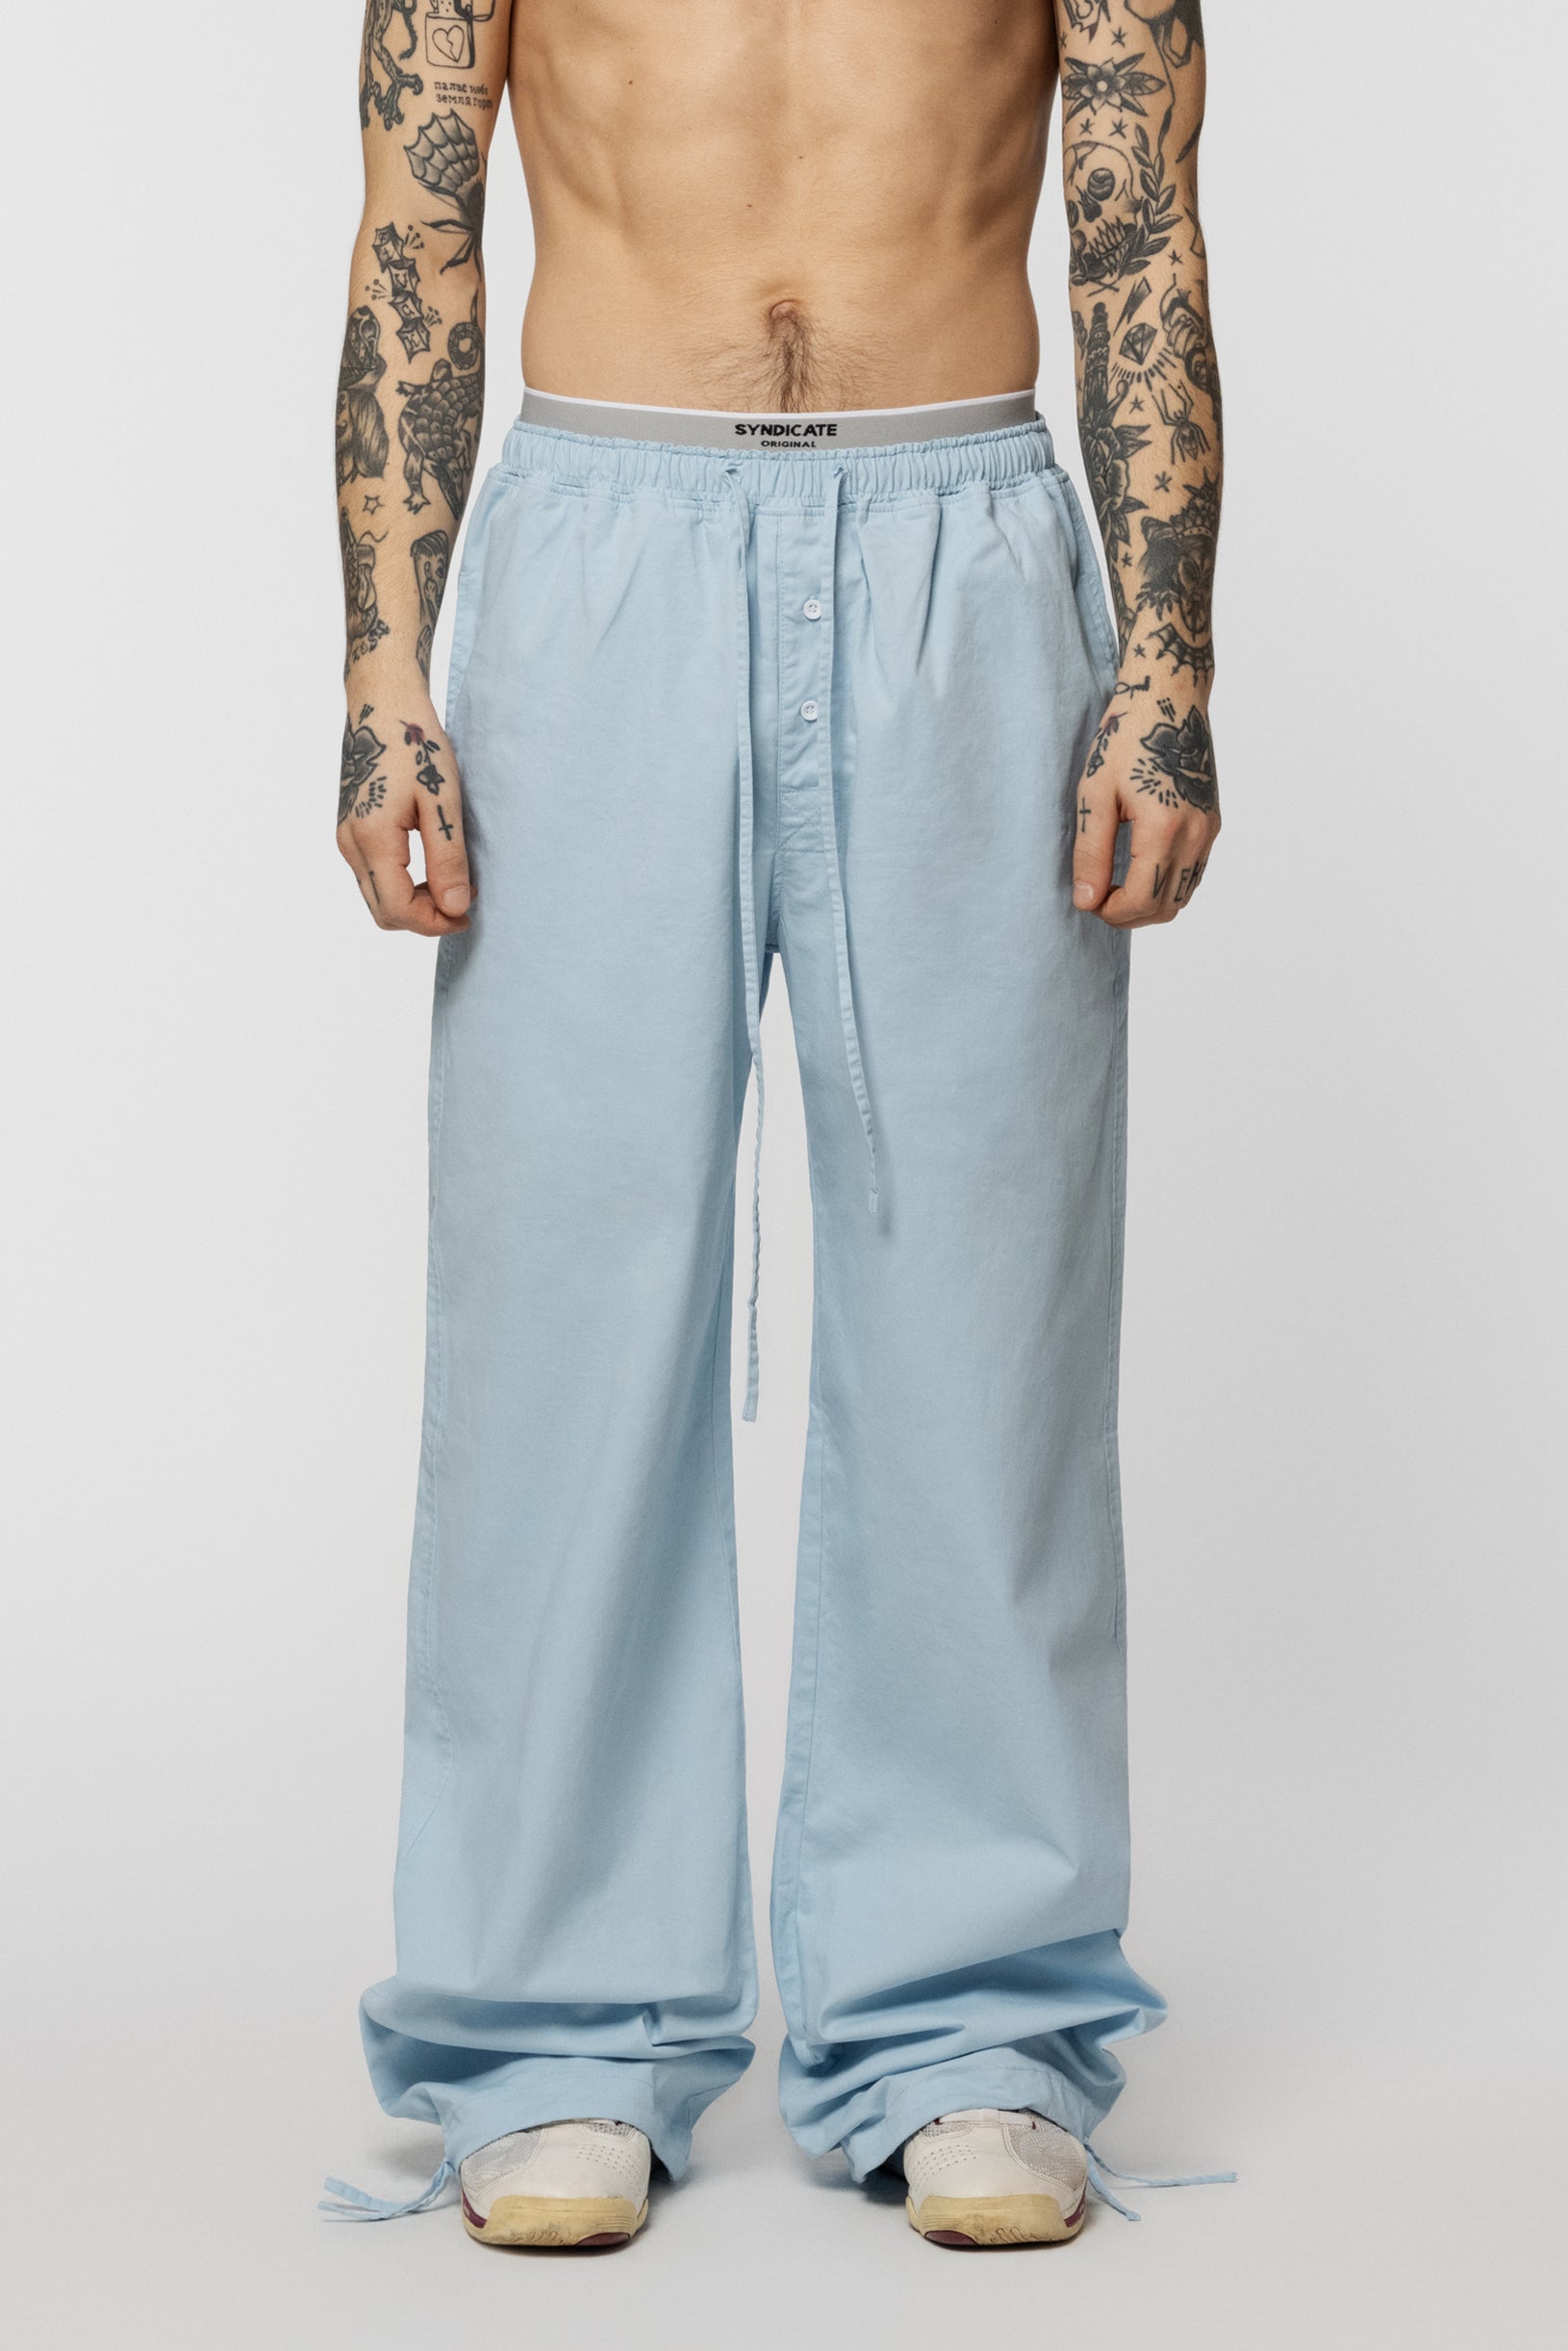 Cotton Boxers Trousers Light Blue